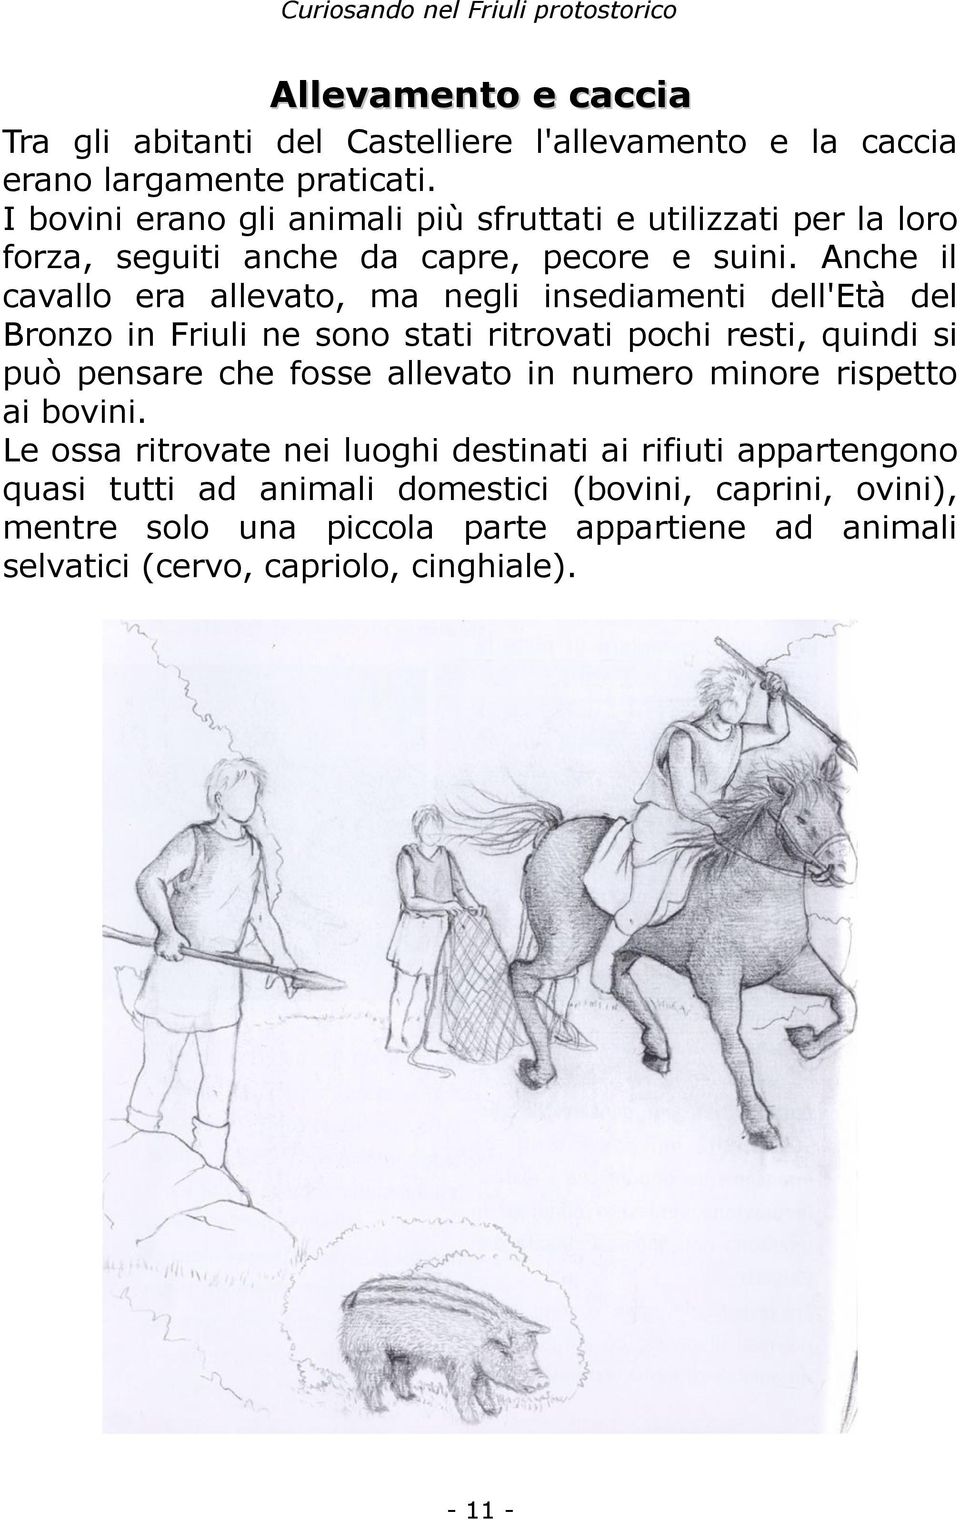 Anche il cavallo era allevato, ma negli insediamenti dell'età del Bronzo in Friuli ne sono stati ritrovati pochi resti, quindi si può pensare che fosse